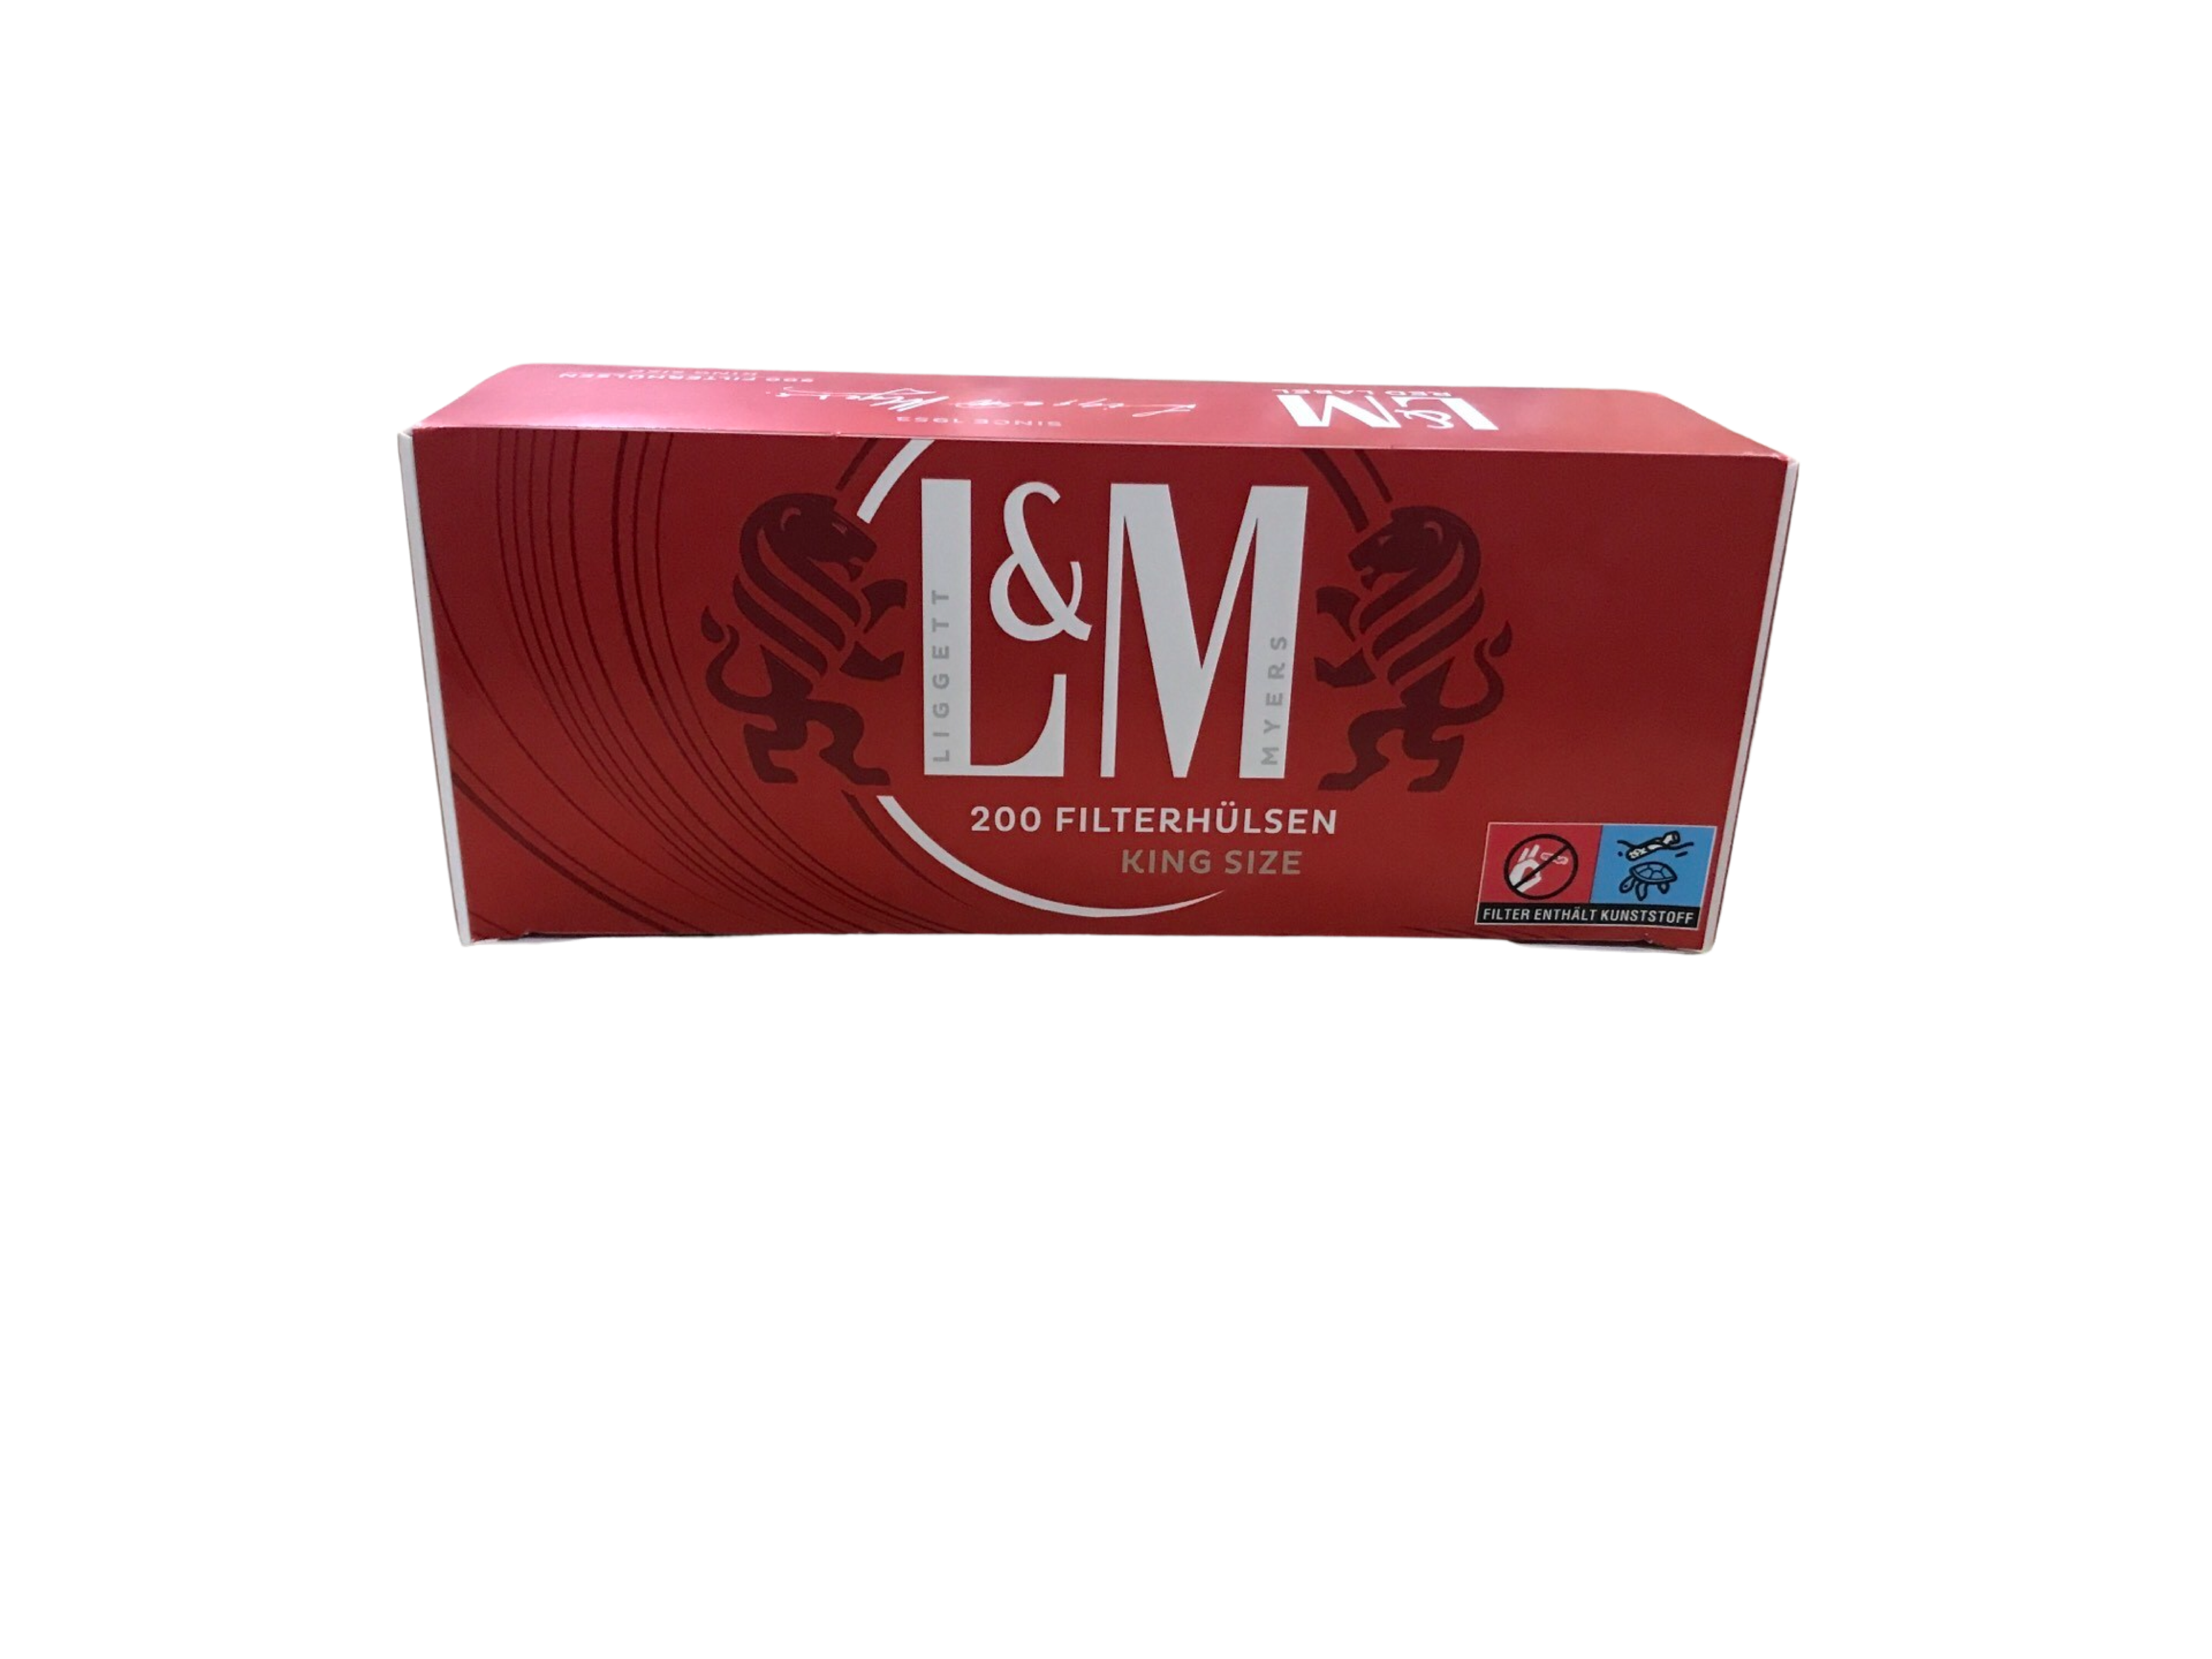 L&M Filterhülsen Red Label 200 Stück 